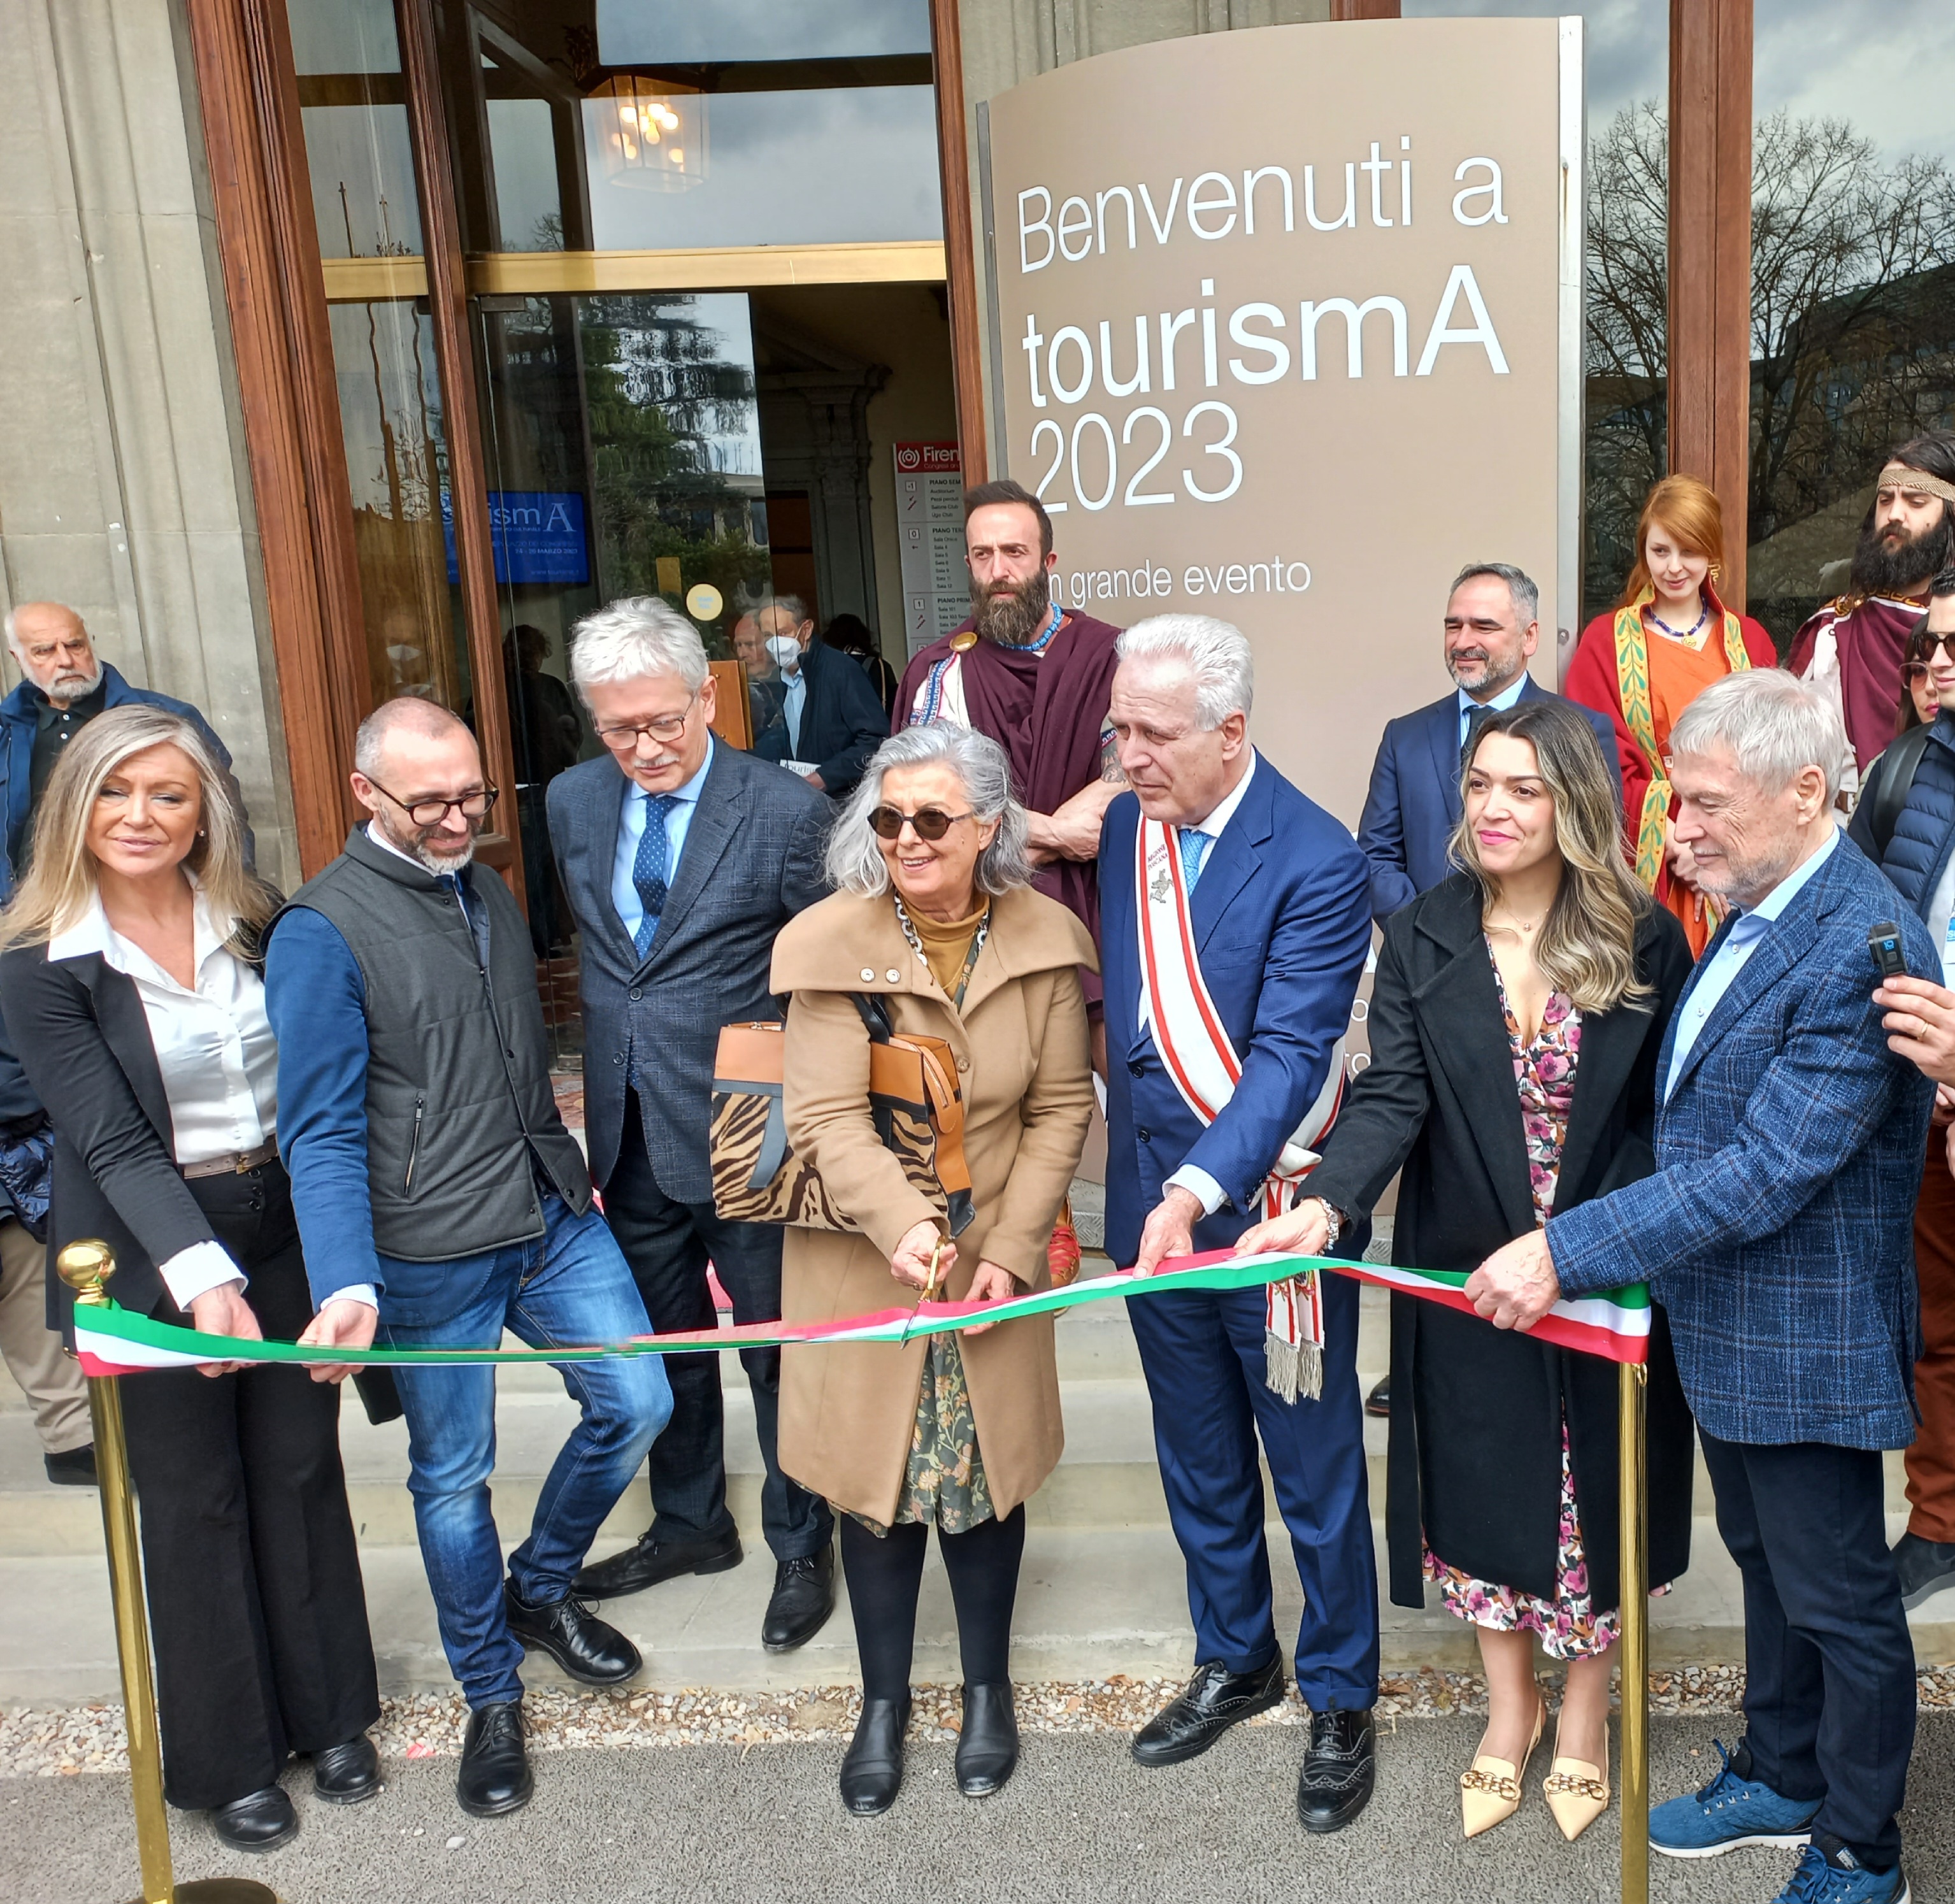 Immagine tourismA 2023, è soprattutto la ‘Toscana diffusa’ a trainare la ripresa del turismo